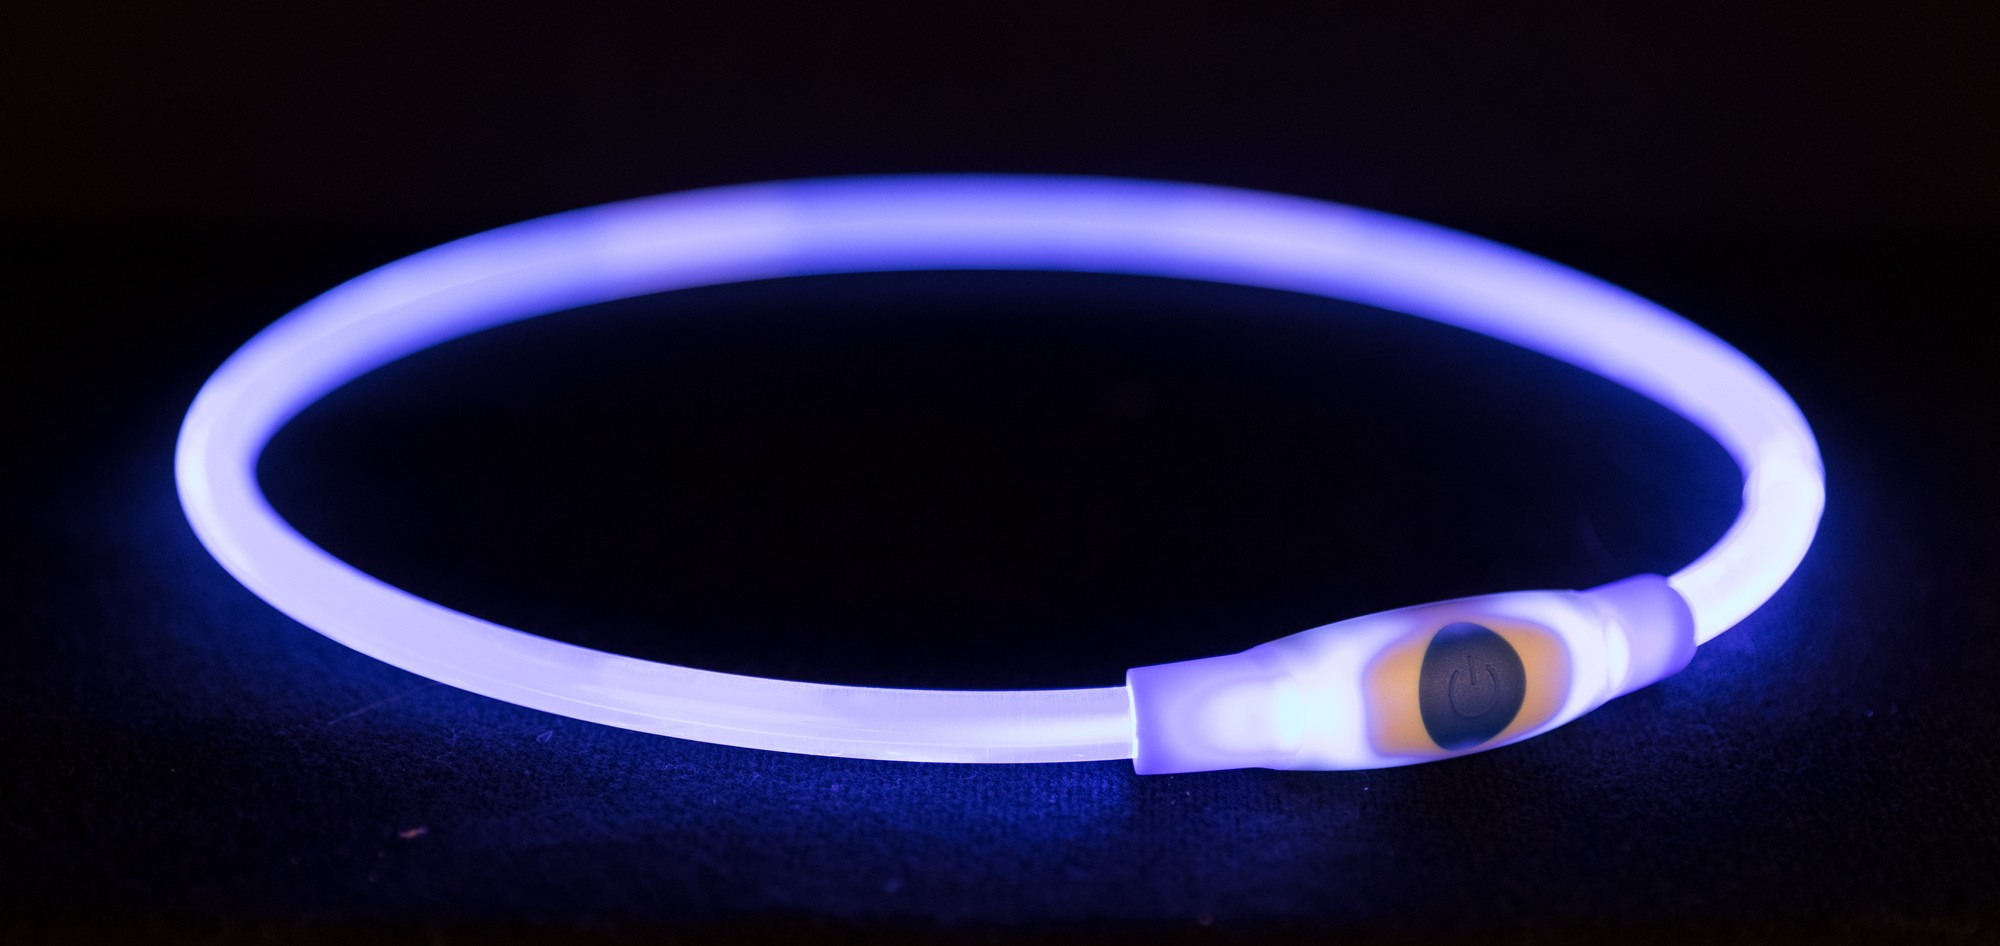 Flash anel iluminado USB Azul